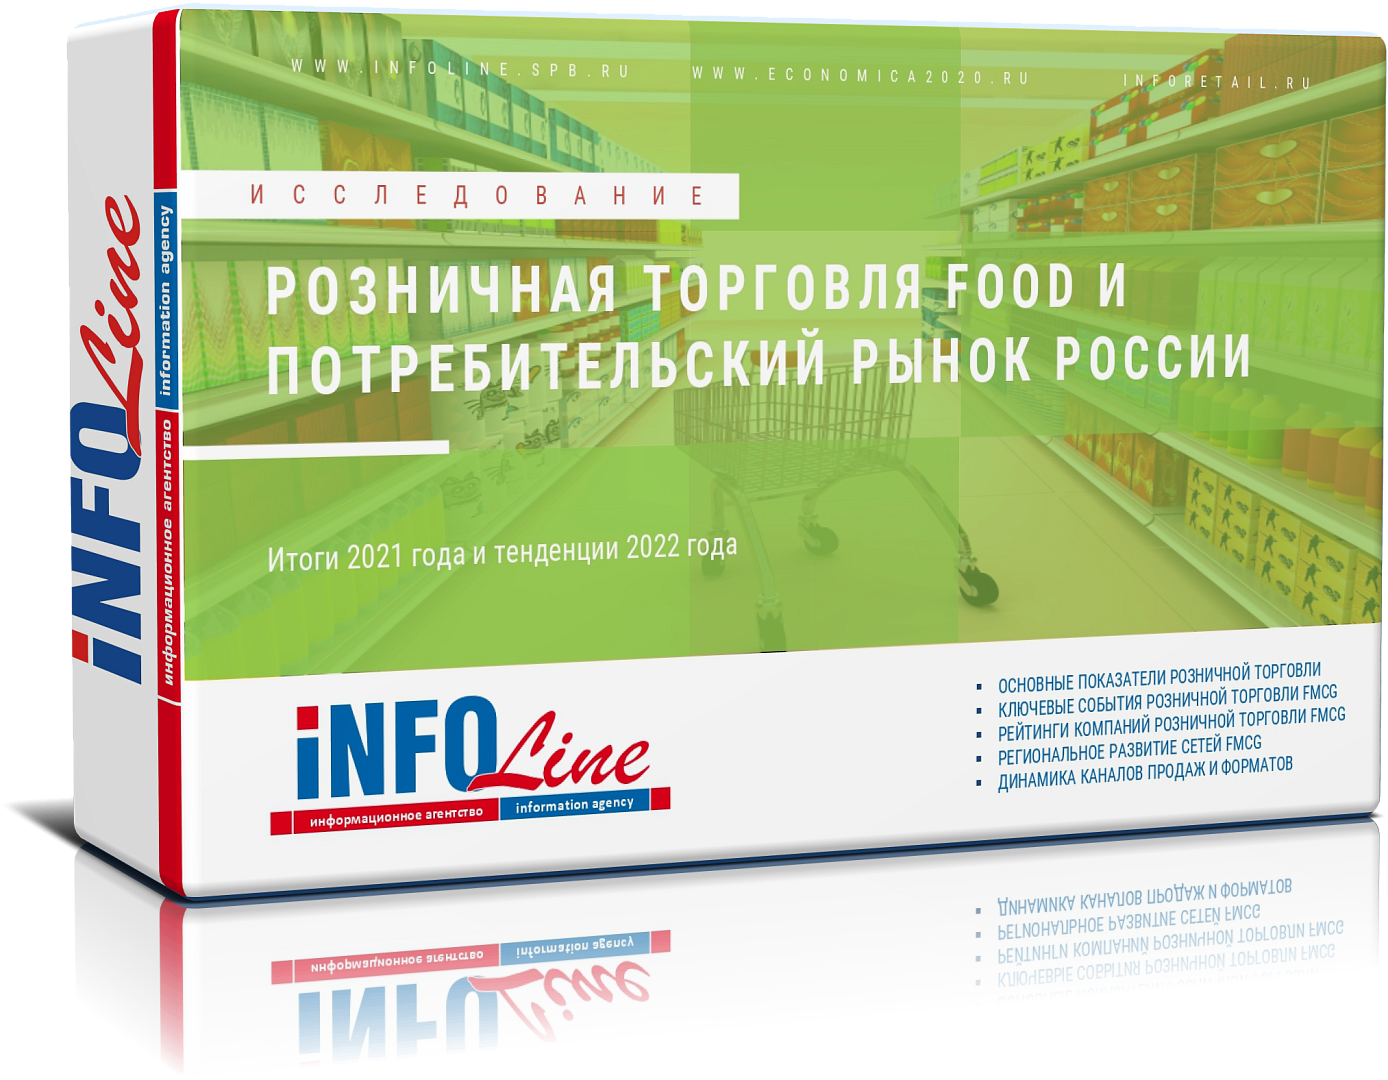 Исследование "Розничная торговля Food и потребительский рынок России 2022 года (Доступна обновленная версия)"